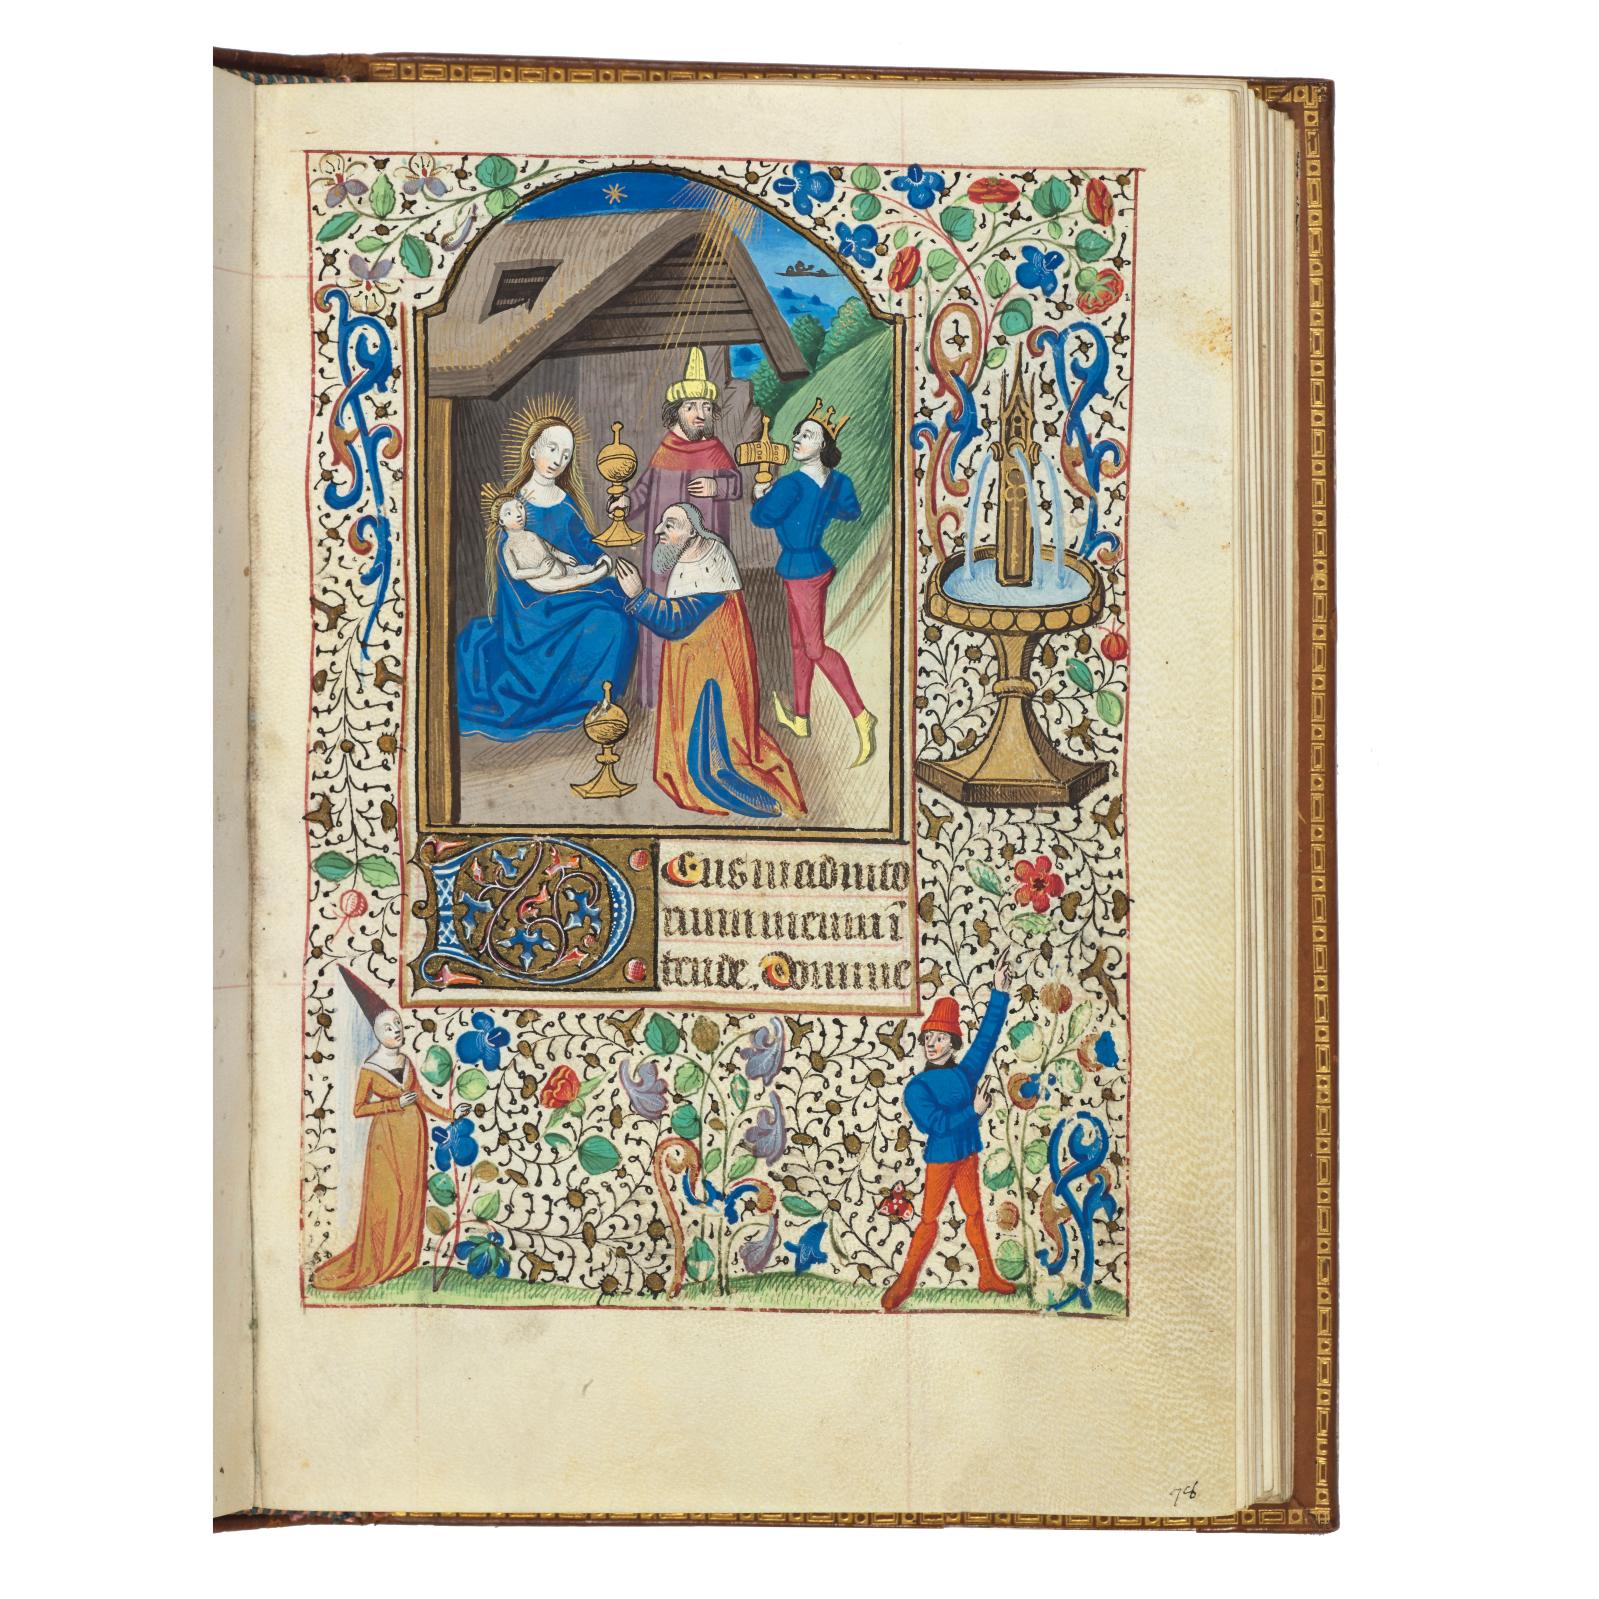 150 000 €Paris (?) et (Clermont-Ferrand ?), vers 1450-1460. Livre d’heures clermontoises dit « Heures Pascal », en latin et en français.Hô